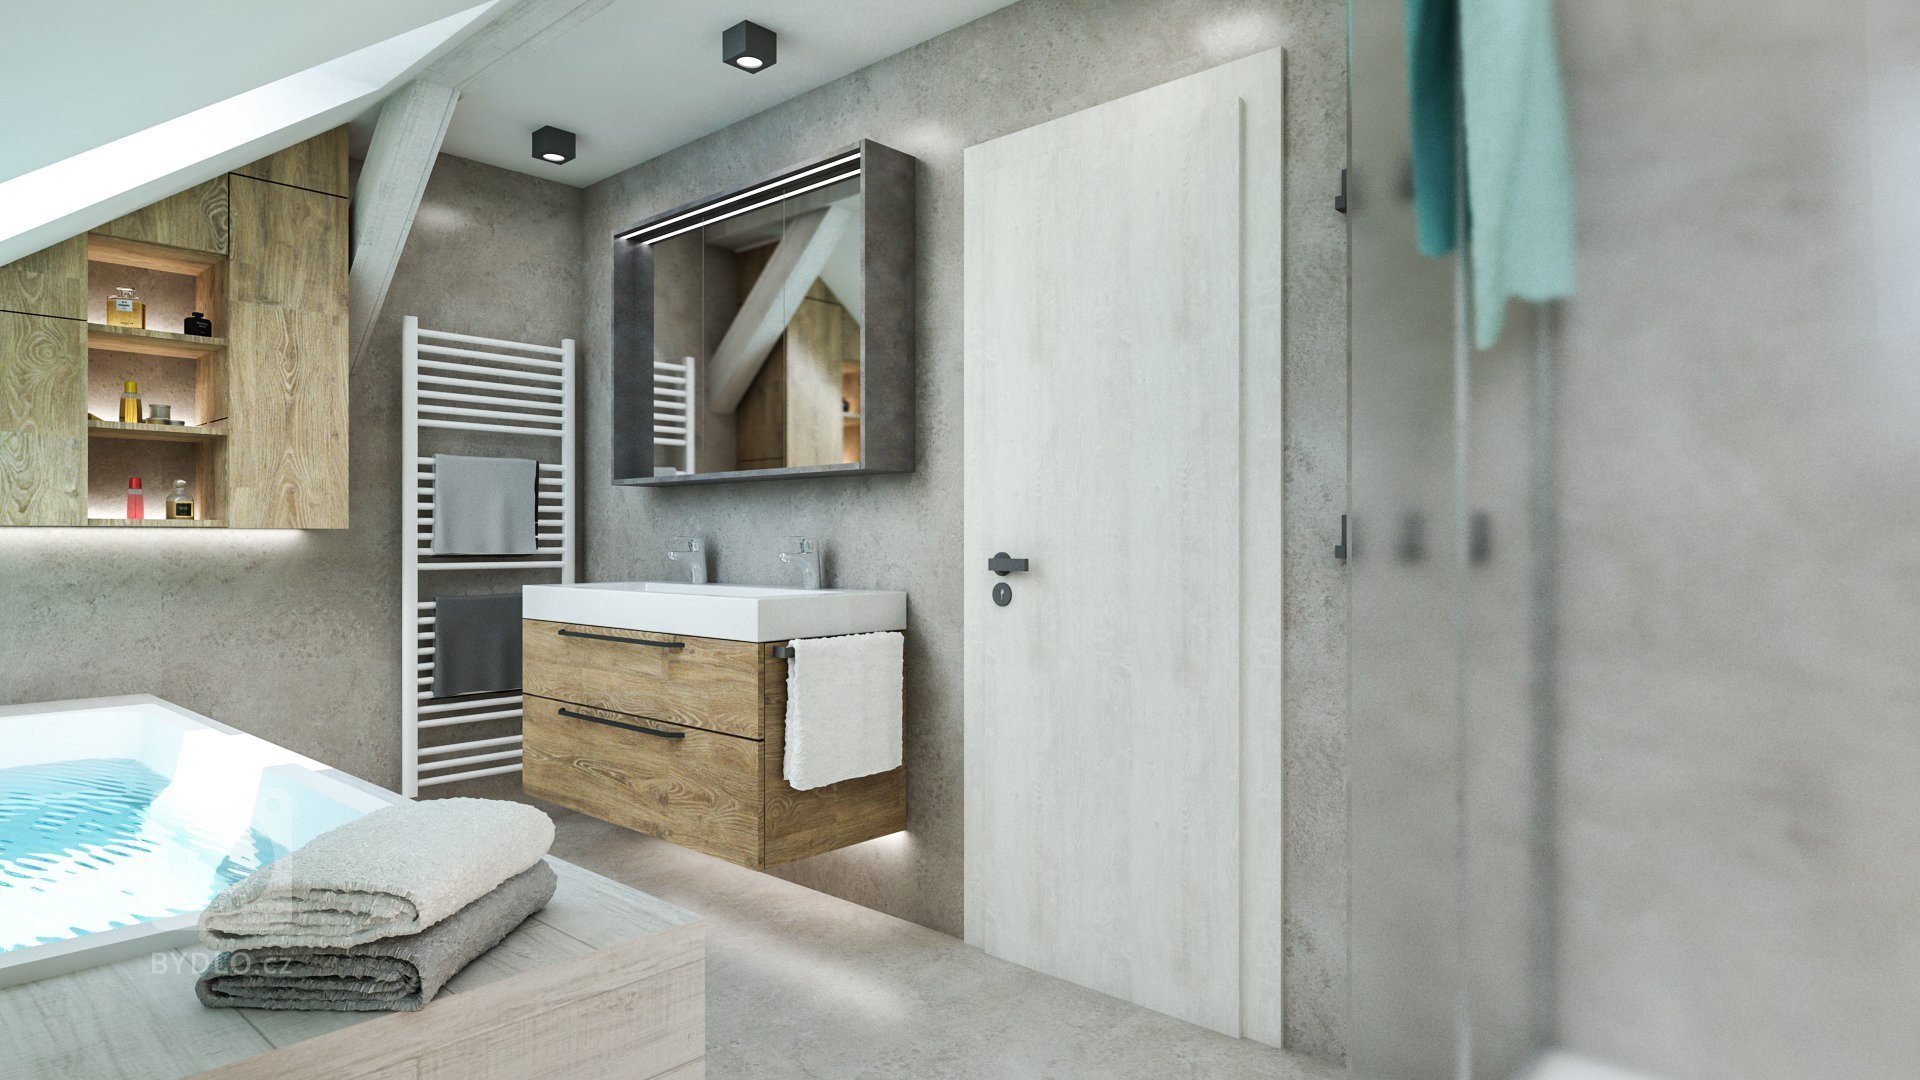 Návrh koupelny je součástí rekonstrukce podkrovního bytu v centru Bratislavy. V místnosti se mají prolínat tmavší prvky z obývacího pokoje a kuchyně spolu se…